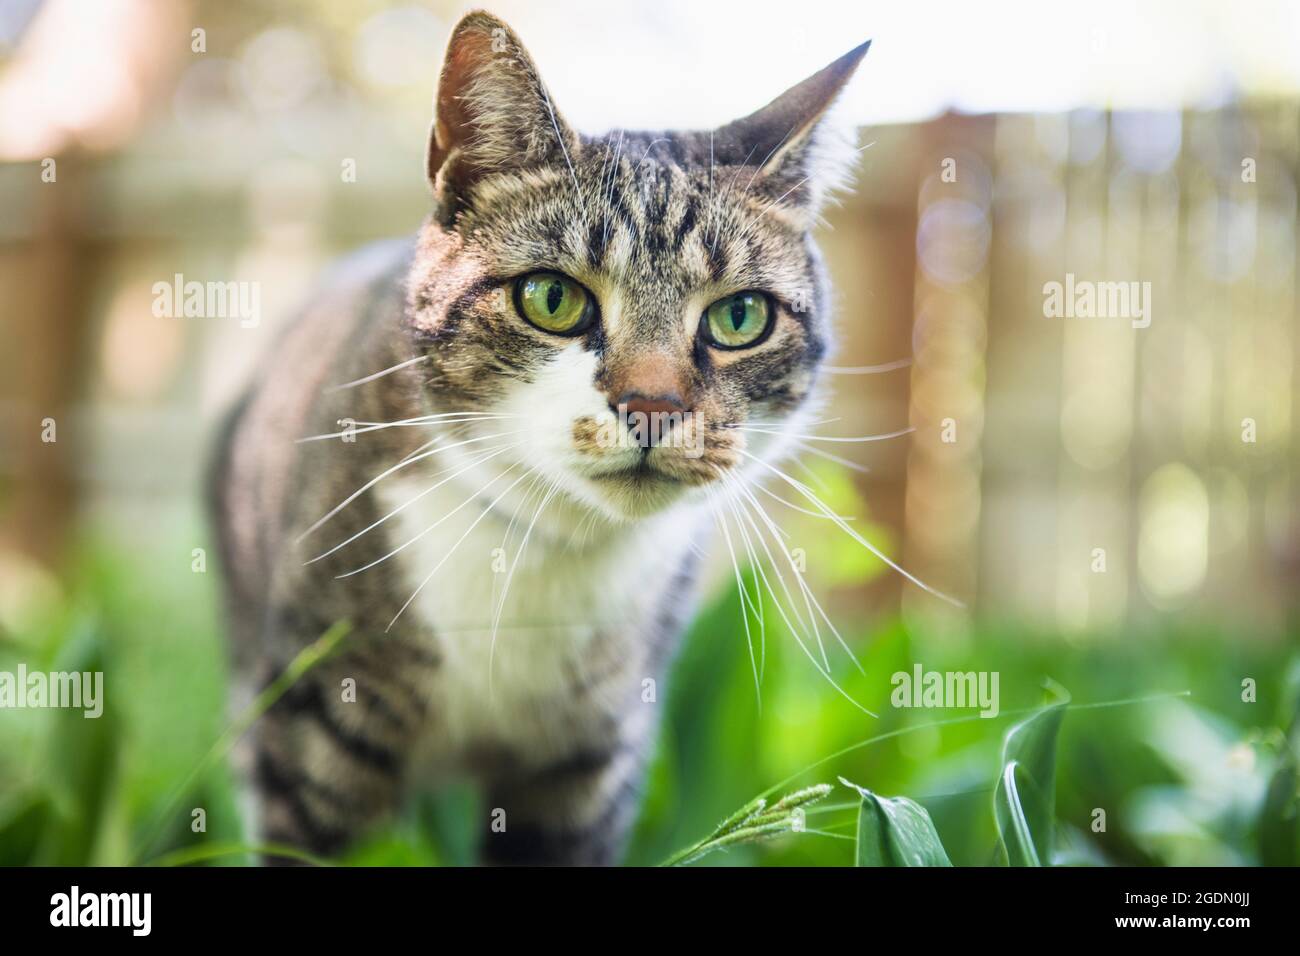 Cat Face Closeup exploring backyard Stock Photo